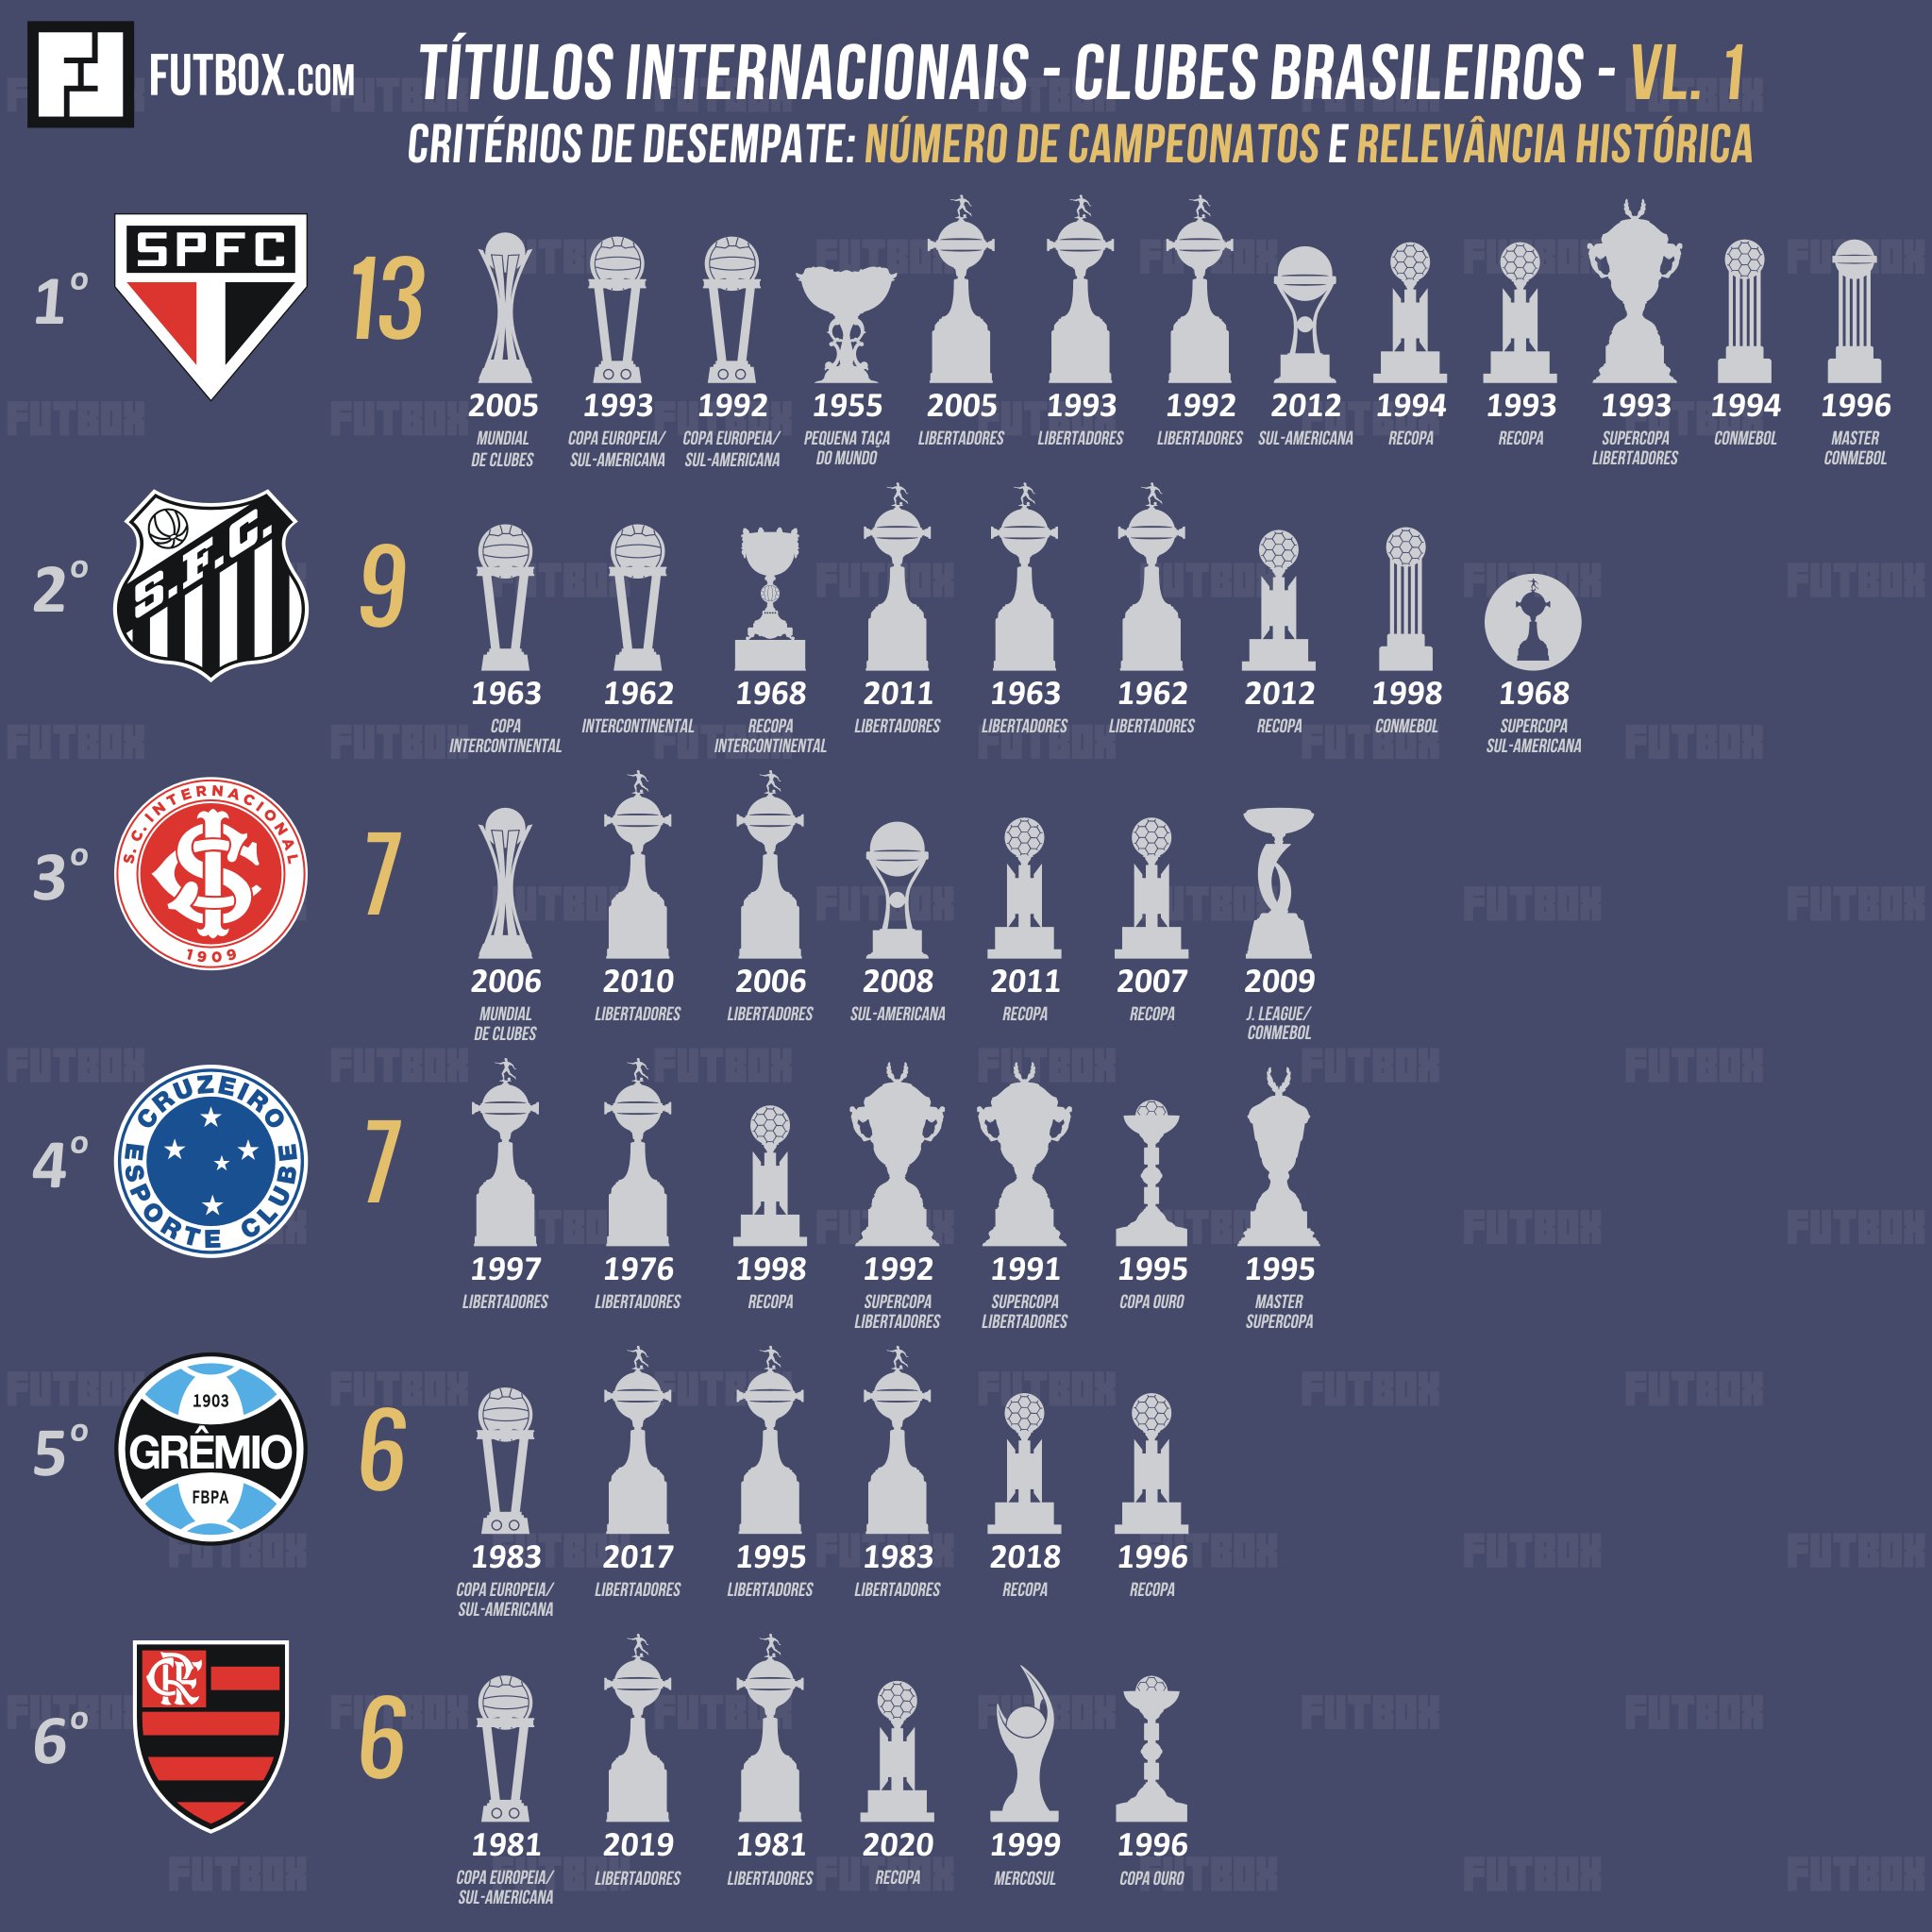 Confira o ranking de títulos nacionais e internacionais no futebol  brasileiro